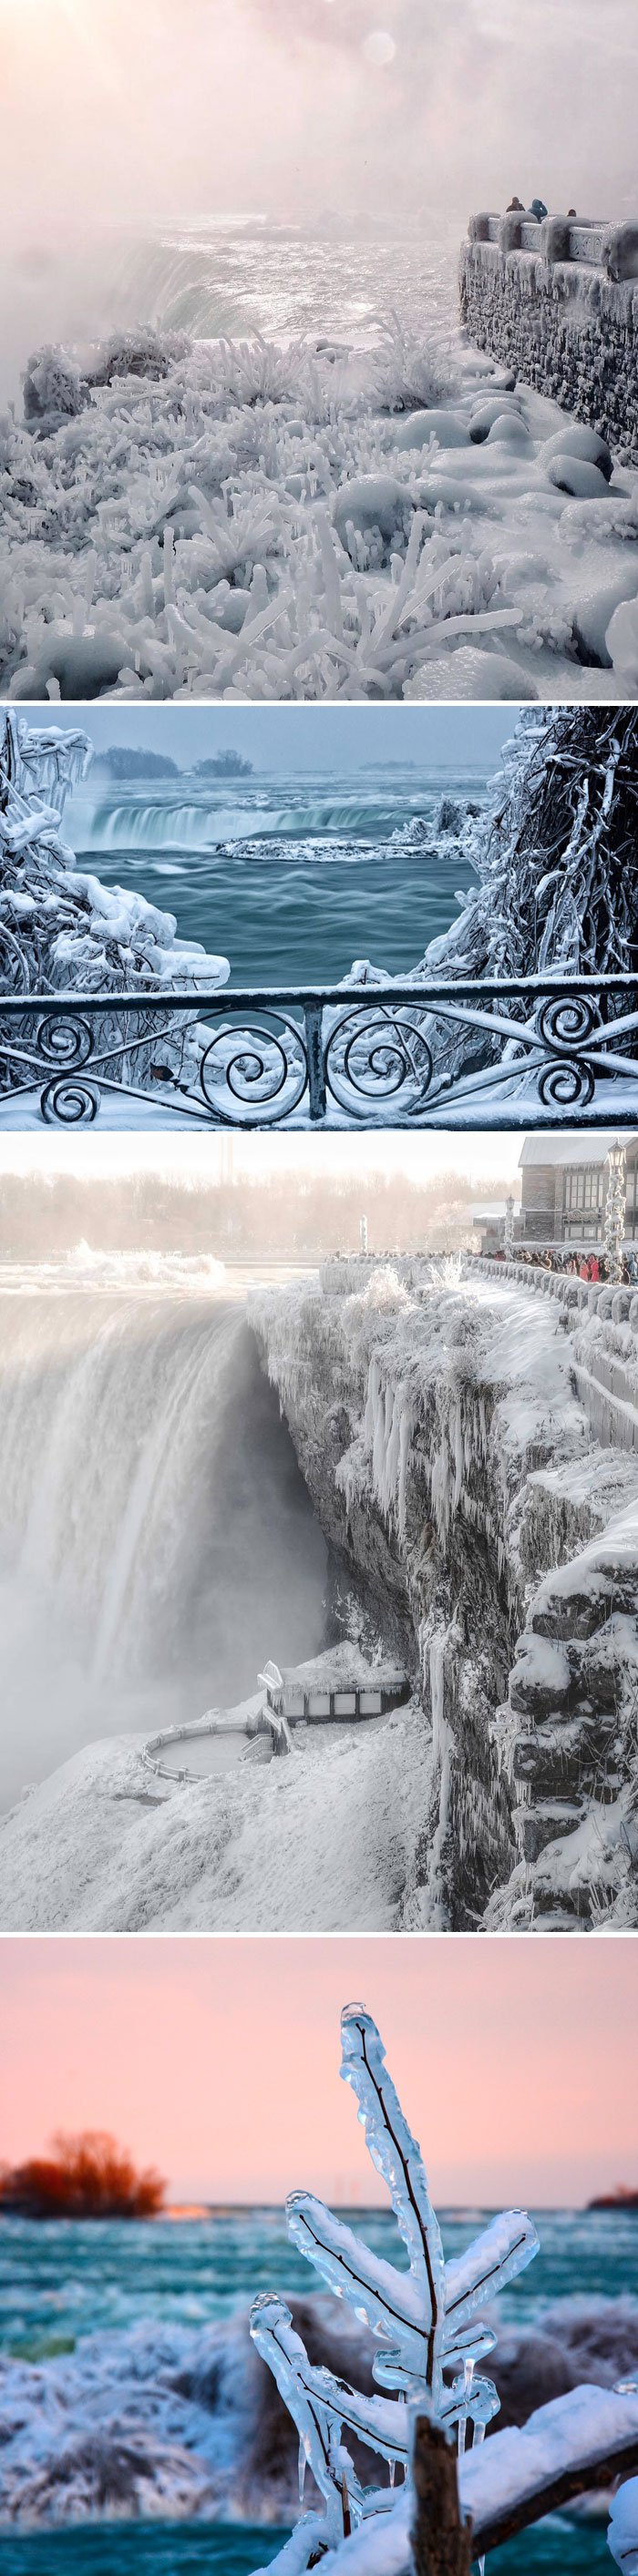 Niagara Falls Is Frozen